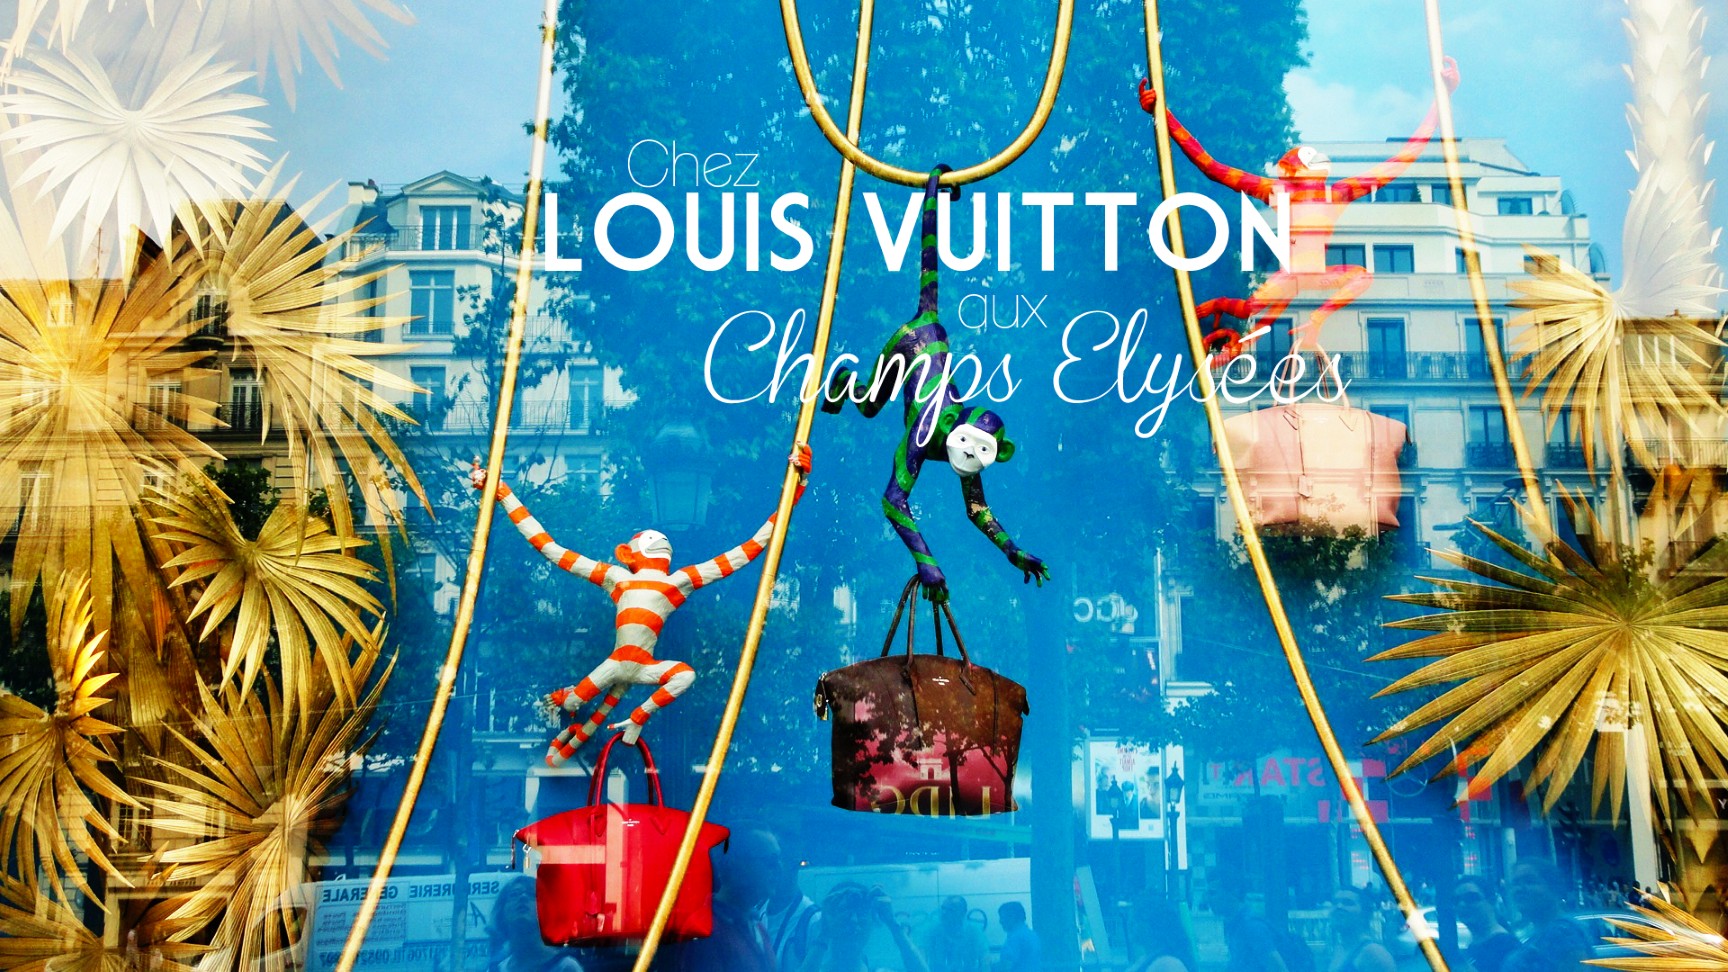 Boutique Louis Vitton, Champs Elysées - Vitrine